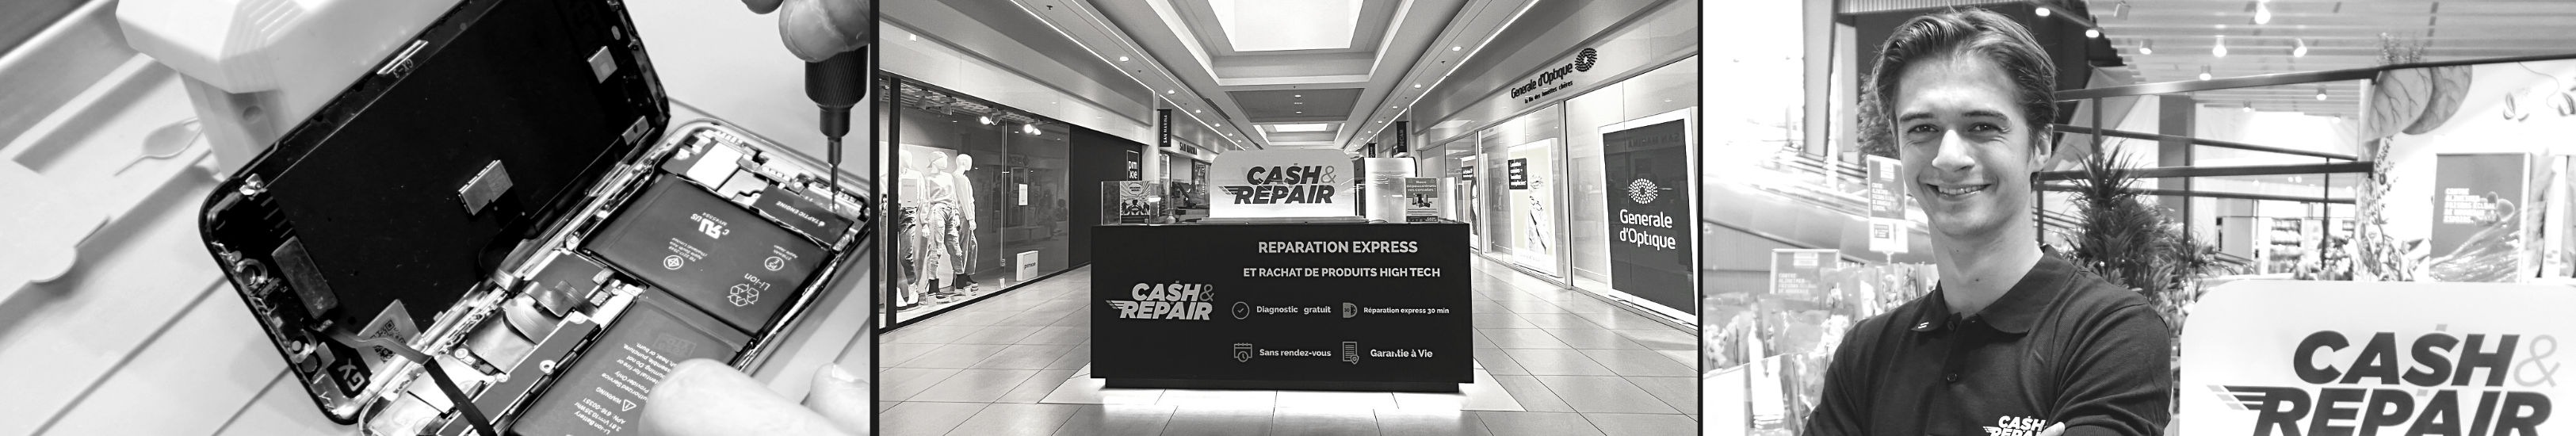 - Atelier de réparation Cash and Repair Luçon